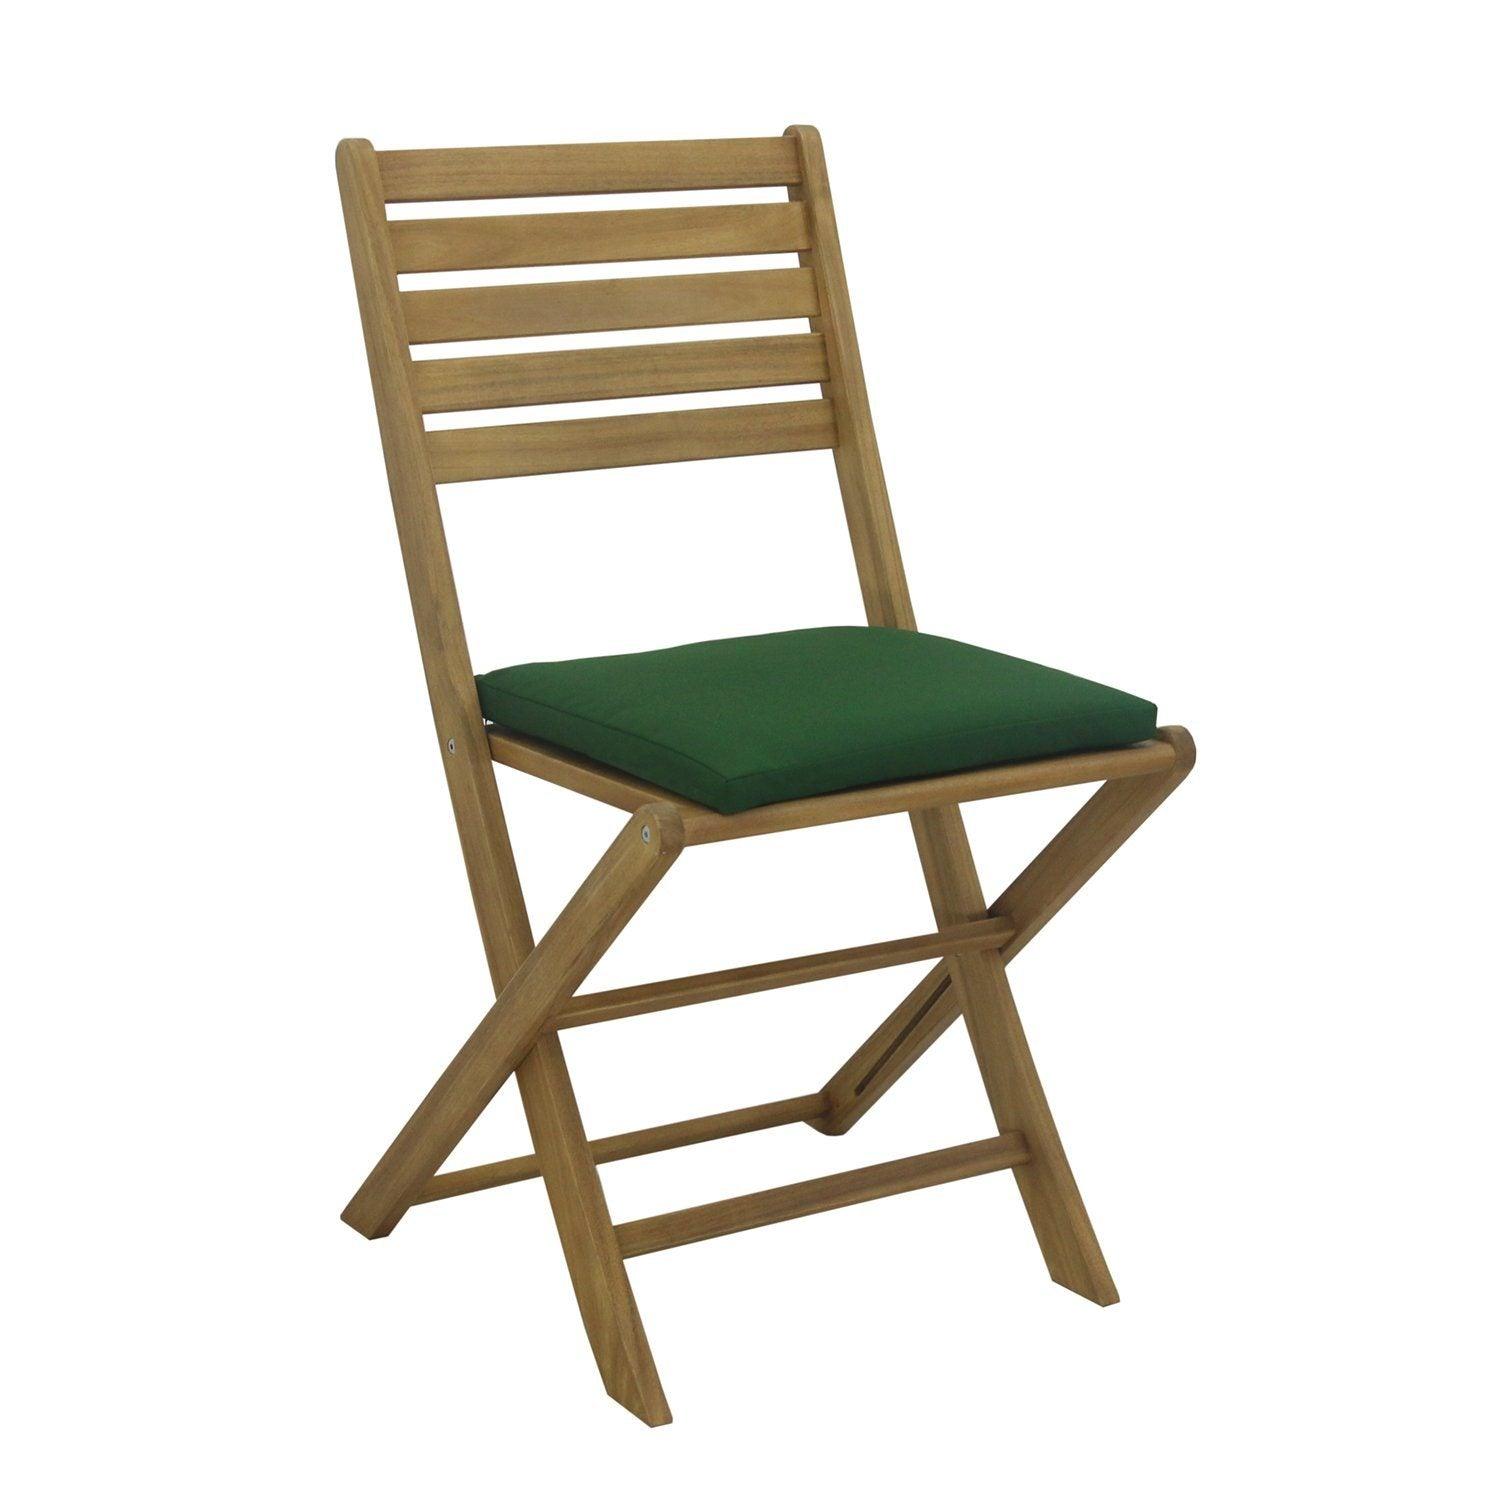 Garden chair cushions - greenx2 - Laura James